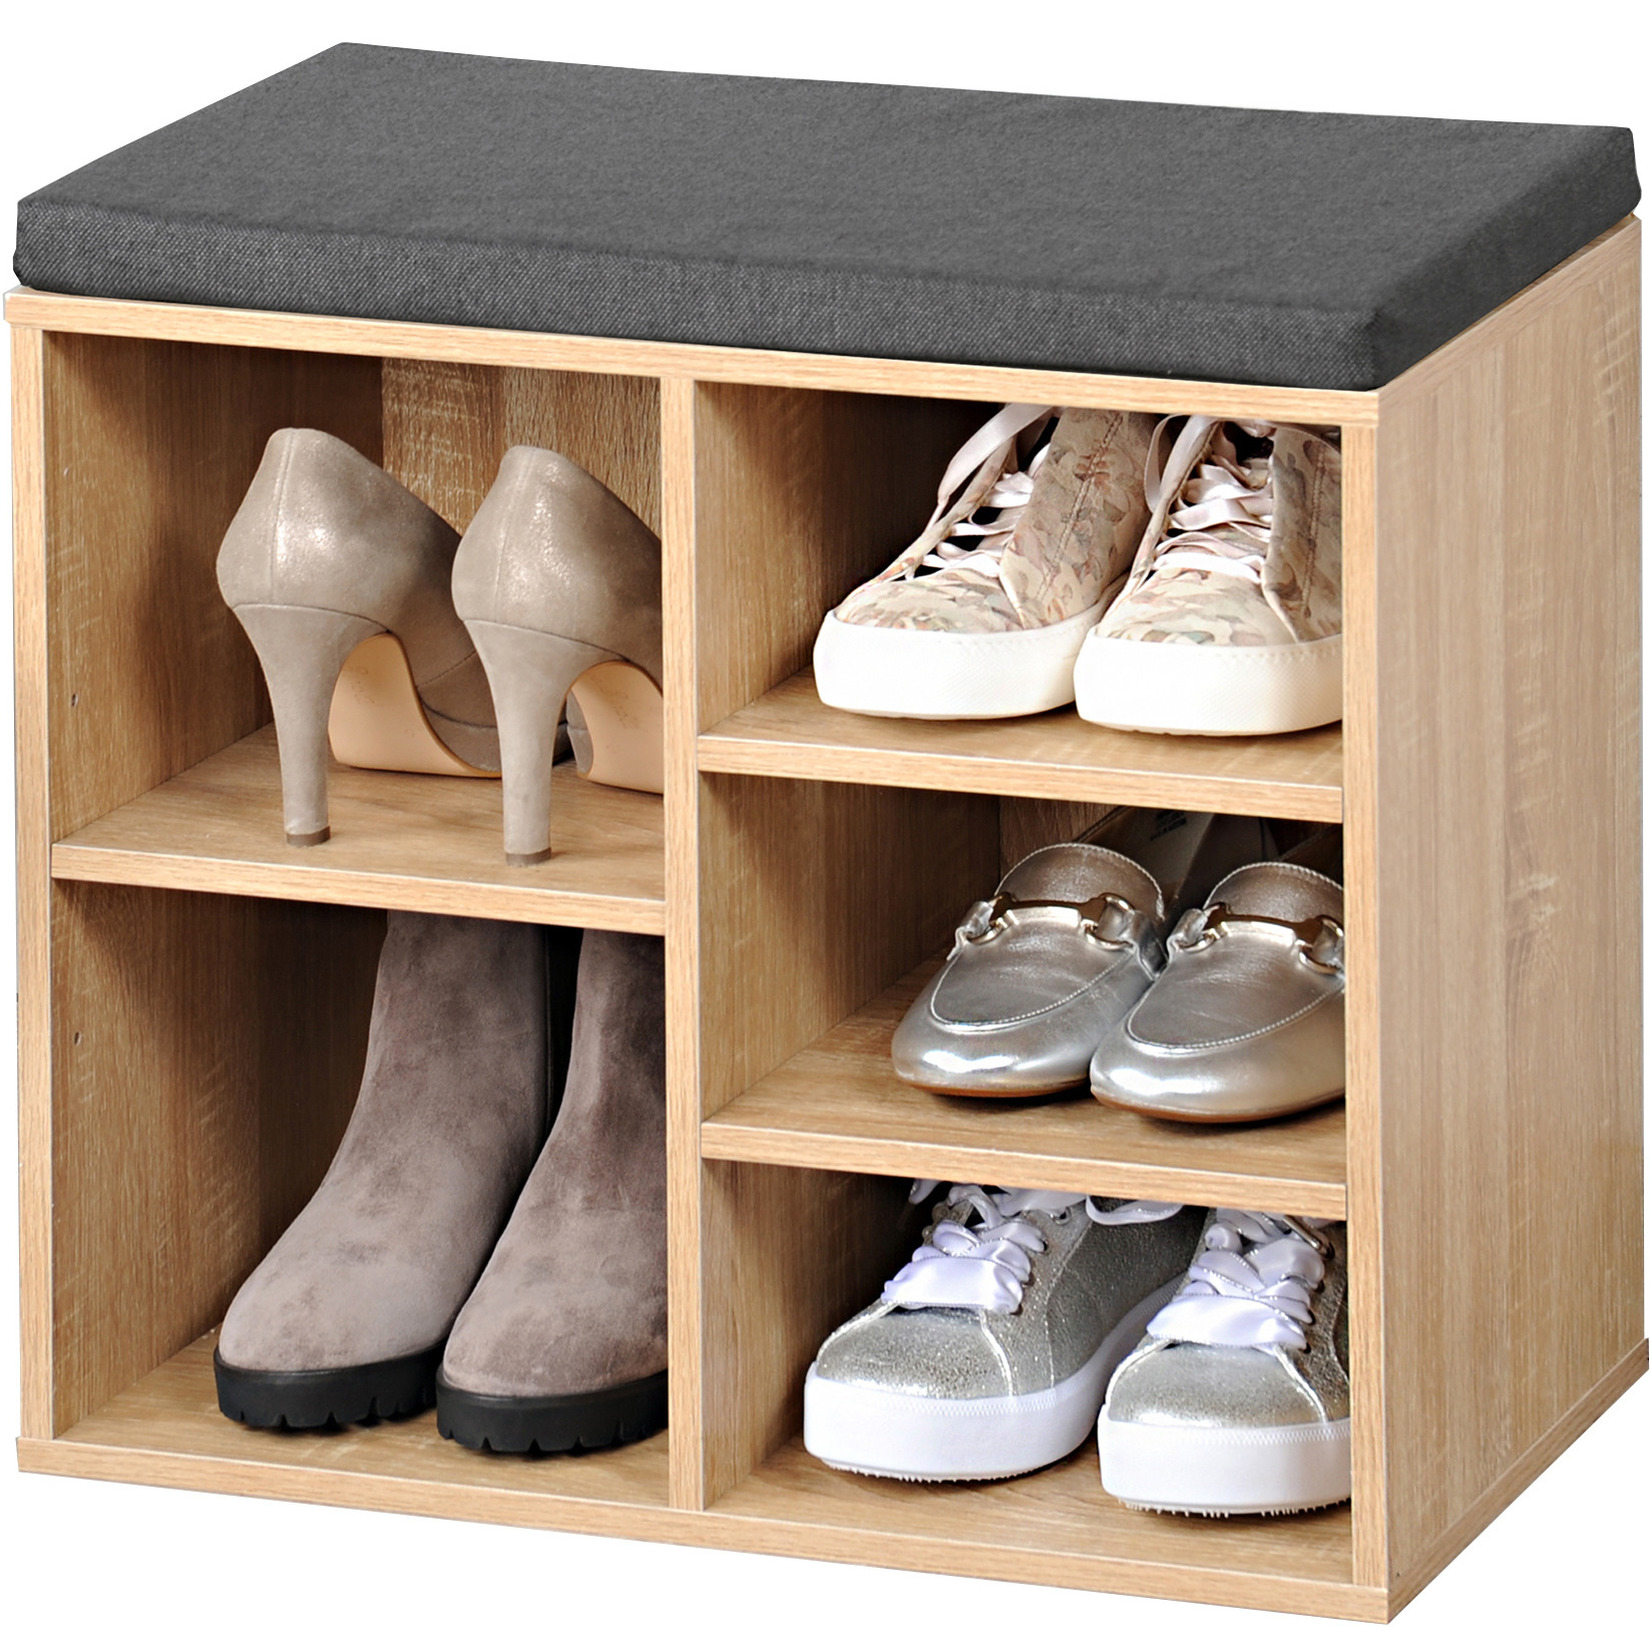 Bruine houtlook schoenenkast-schoenenrek bankje 29 x 48 x 51 cm met zitkussen